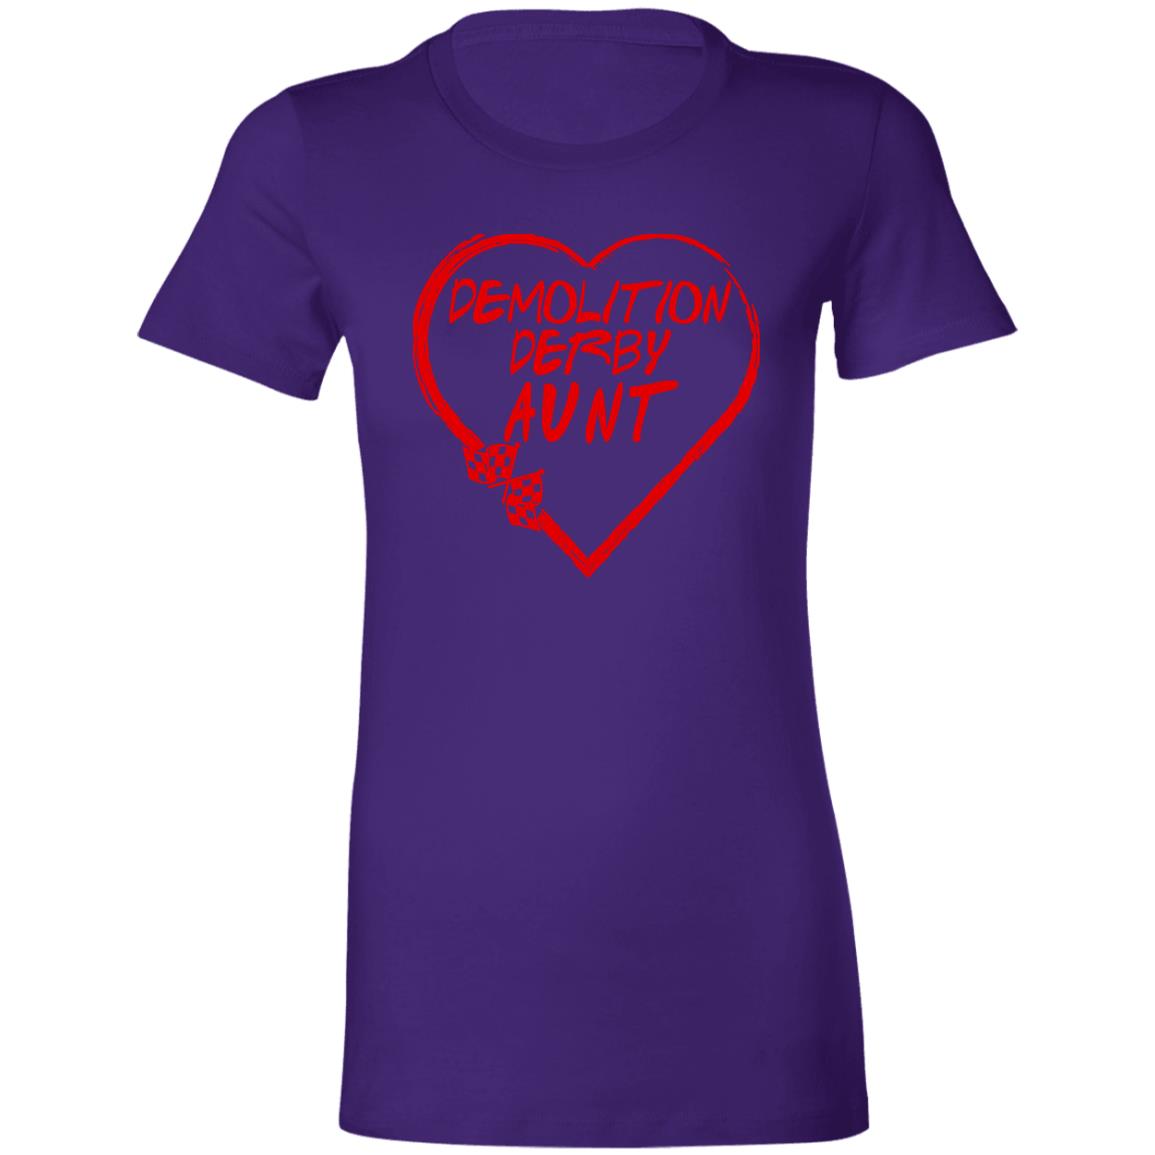 Demolition Derby Aunt Heart Ladies' Favorite T-Shirt